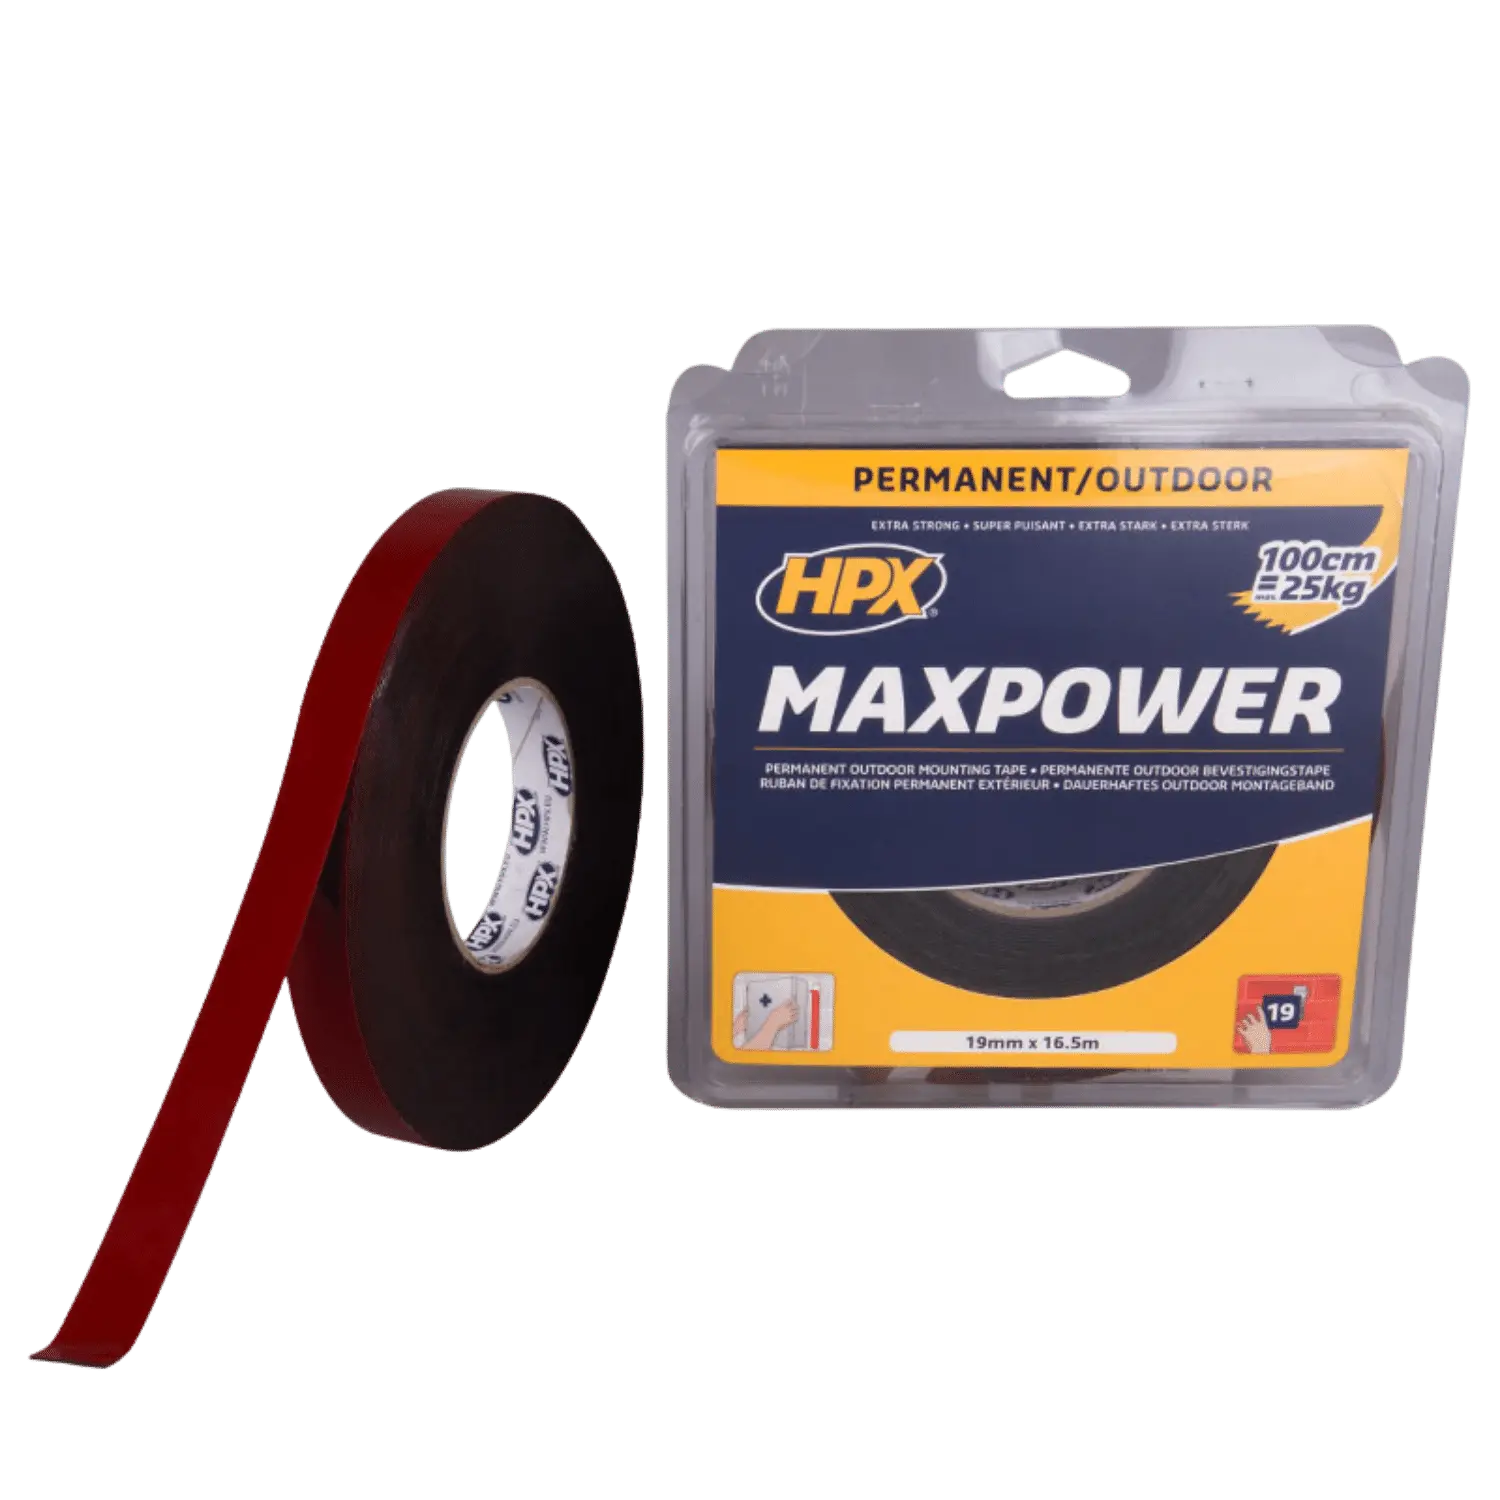 Ruban adhésif Max Power pour usage extérieur - noir 19mm x 16,5m